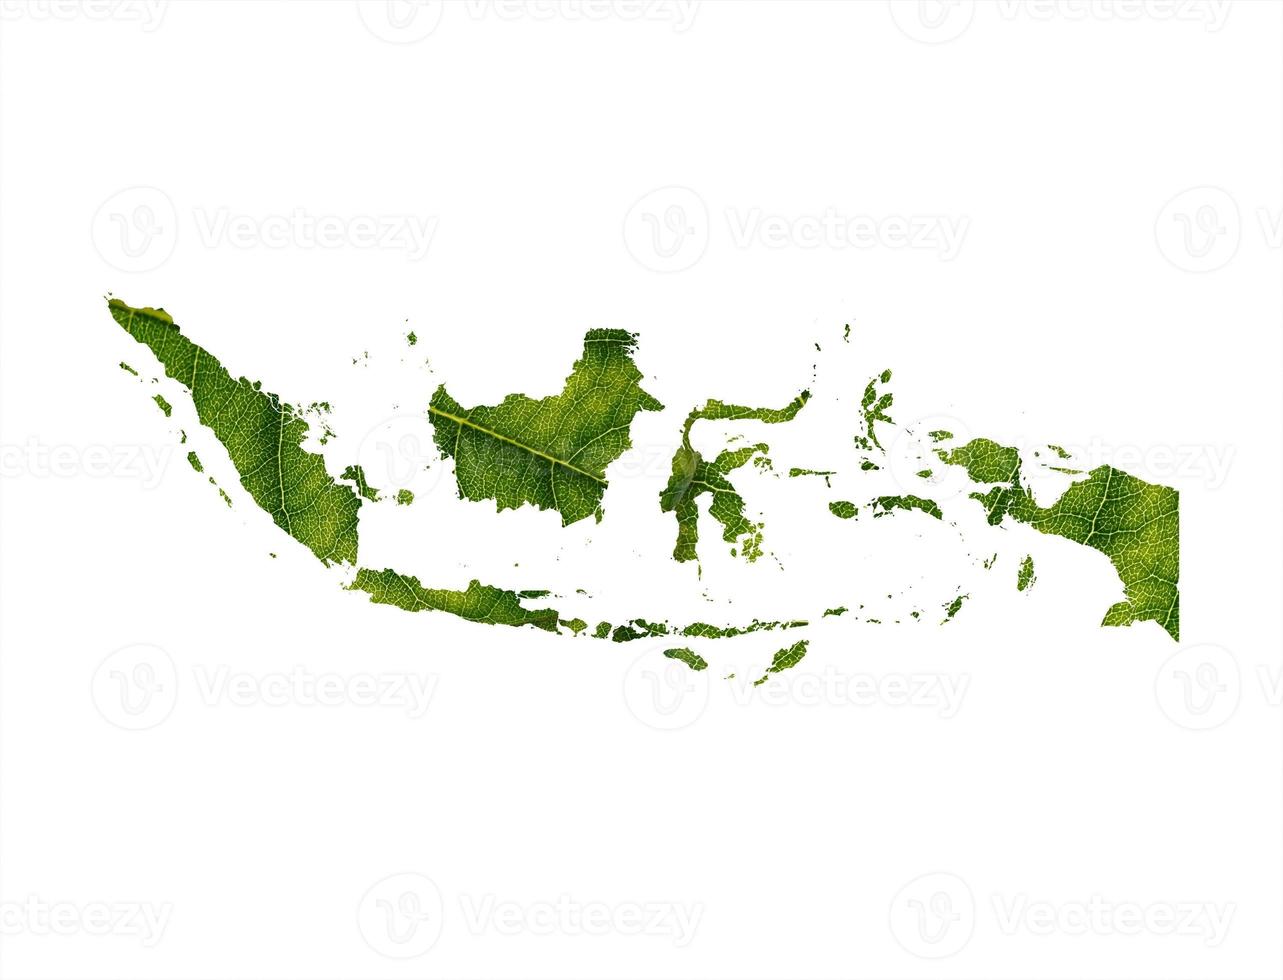 indonesien karta gjord av gröna löv, koncept ekologi karta grönt blad på jord bakgrund foto